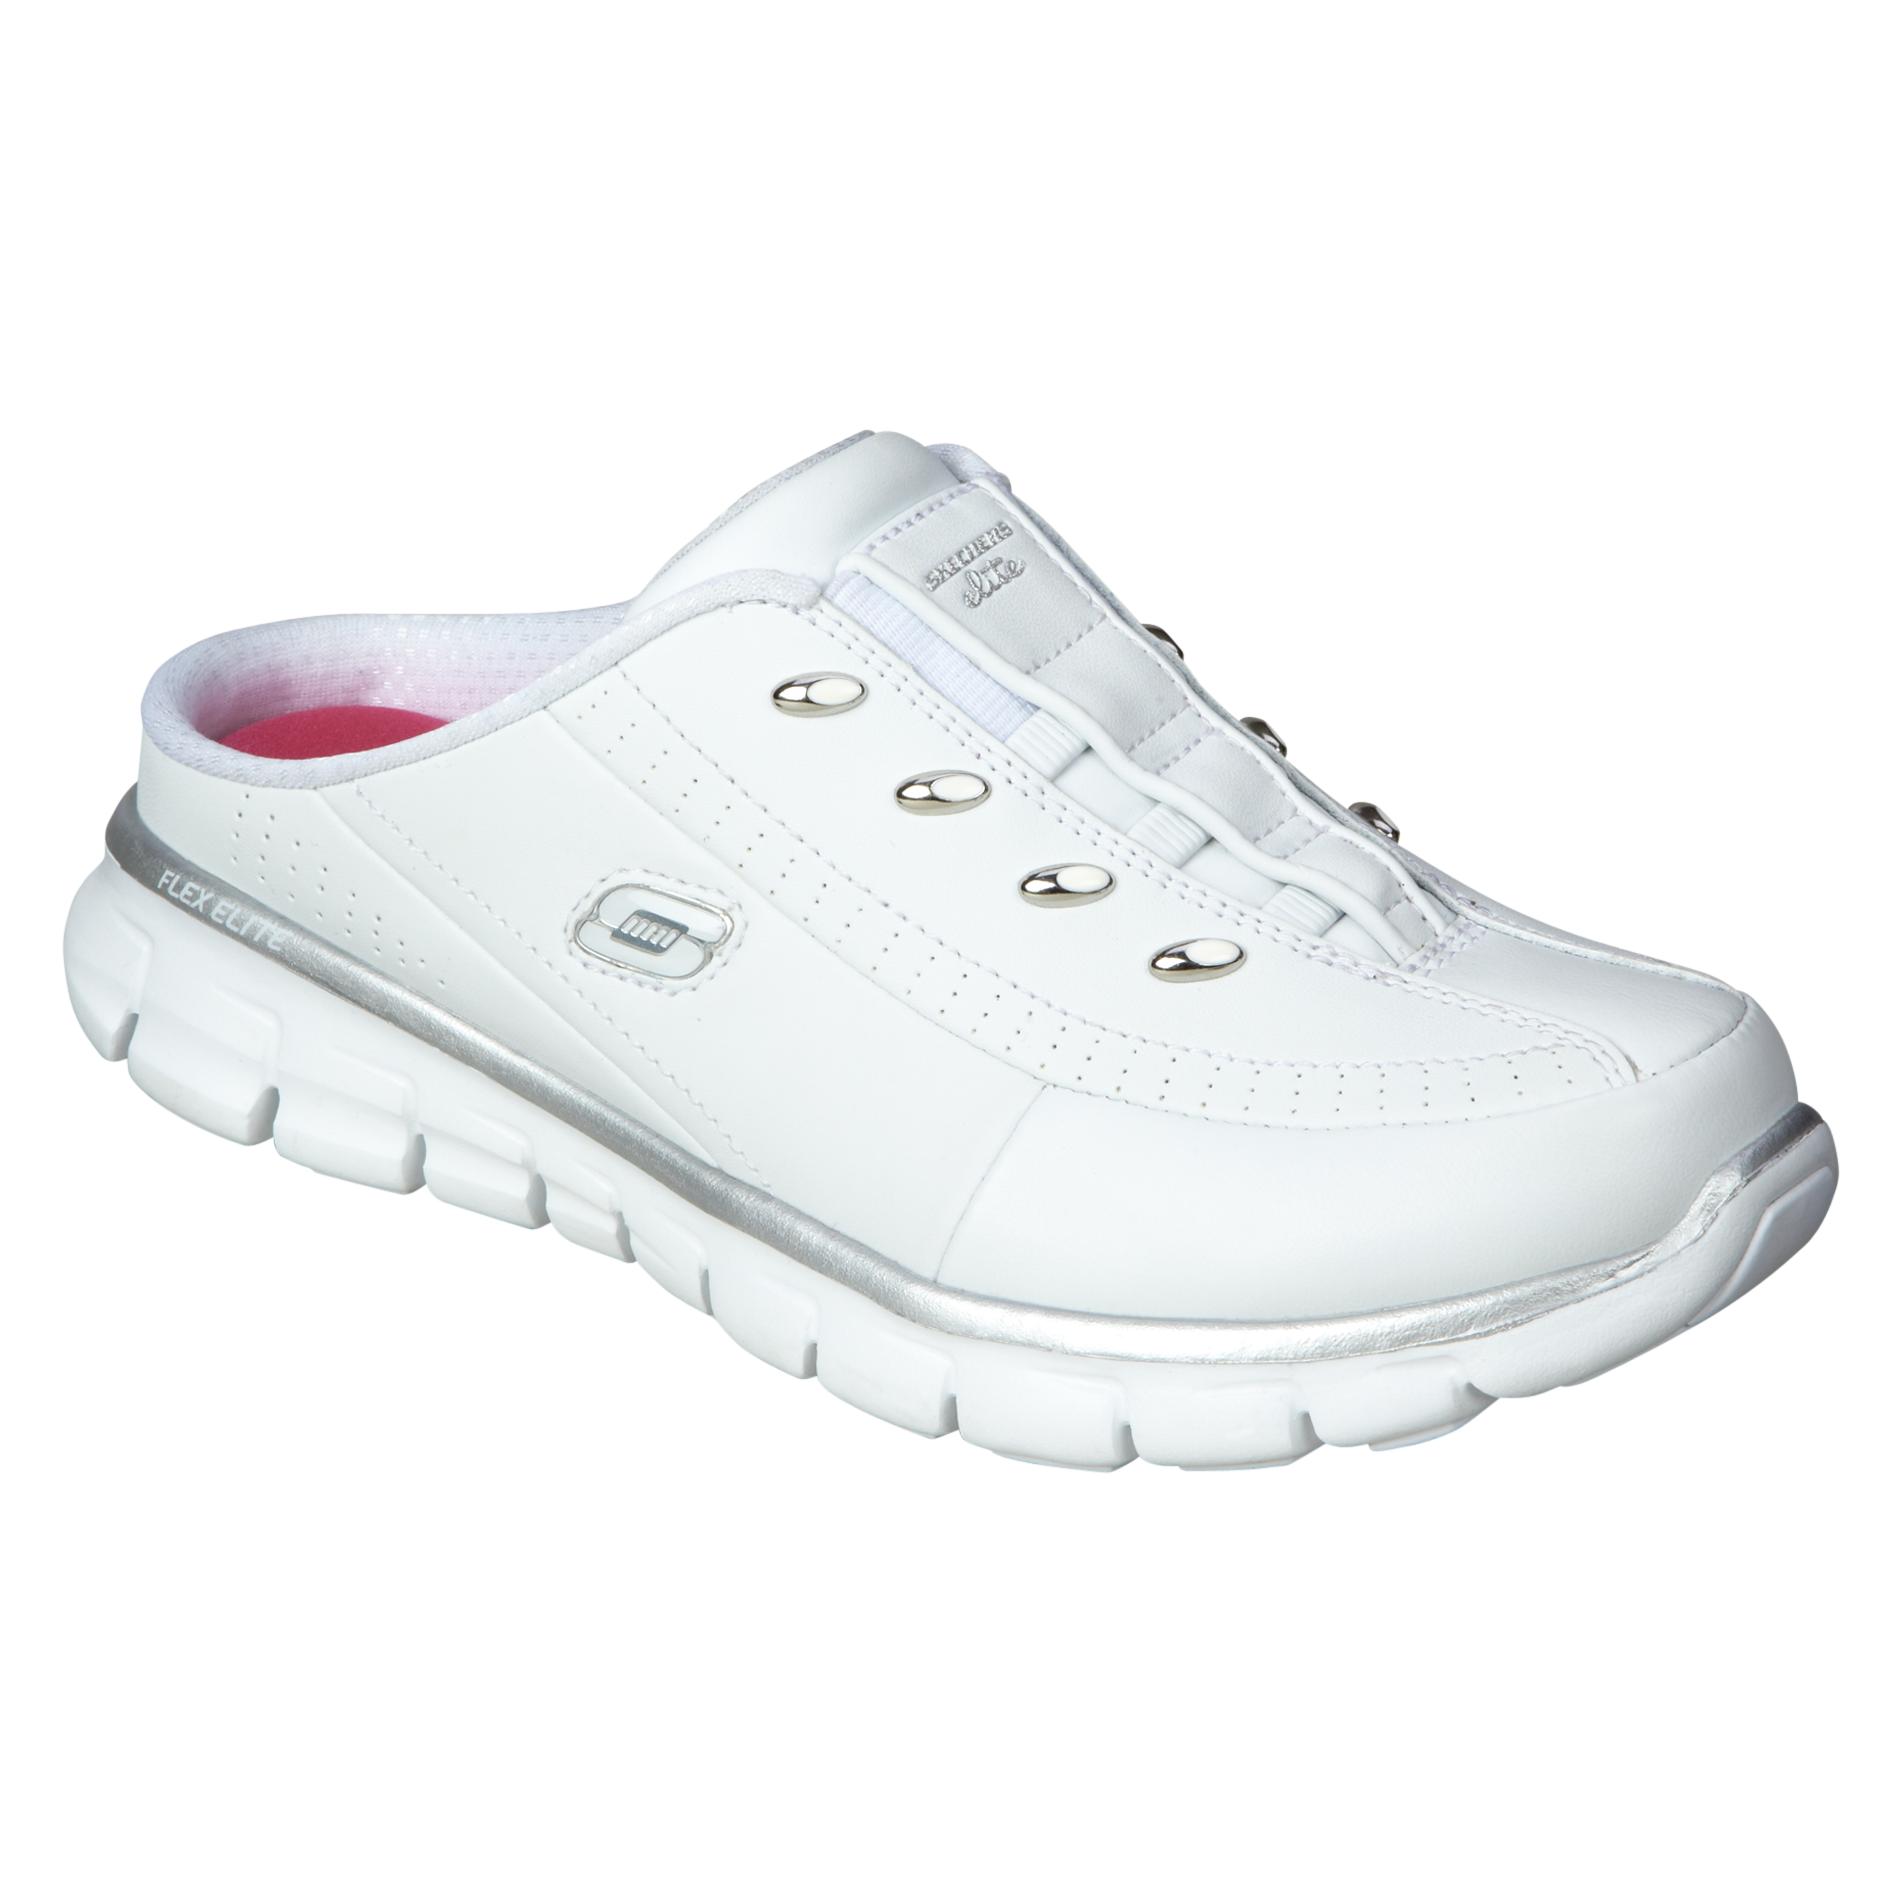 Skechers Women's Elite Status White/Silver Slip-On Athletic Shoe